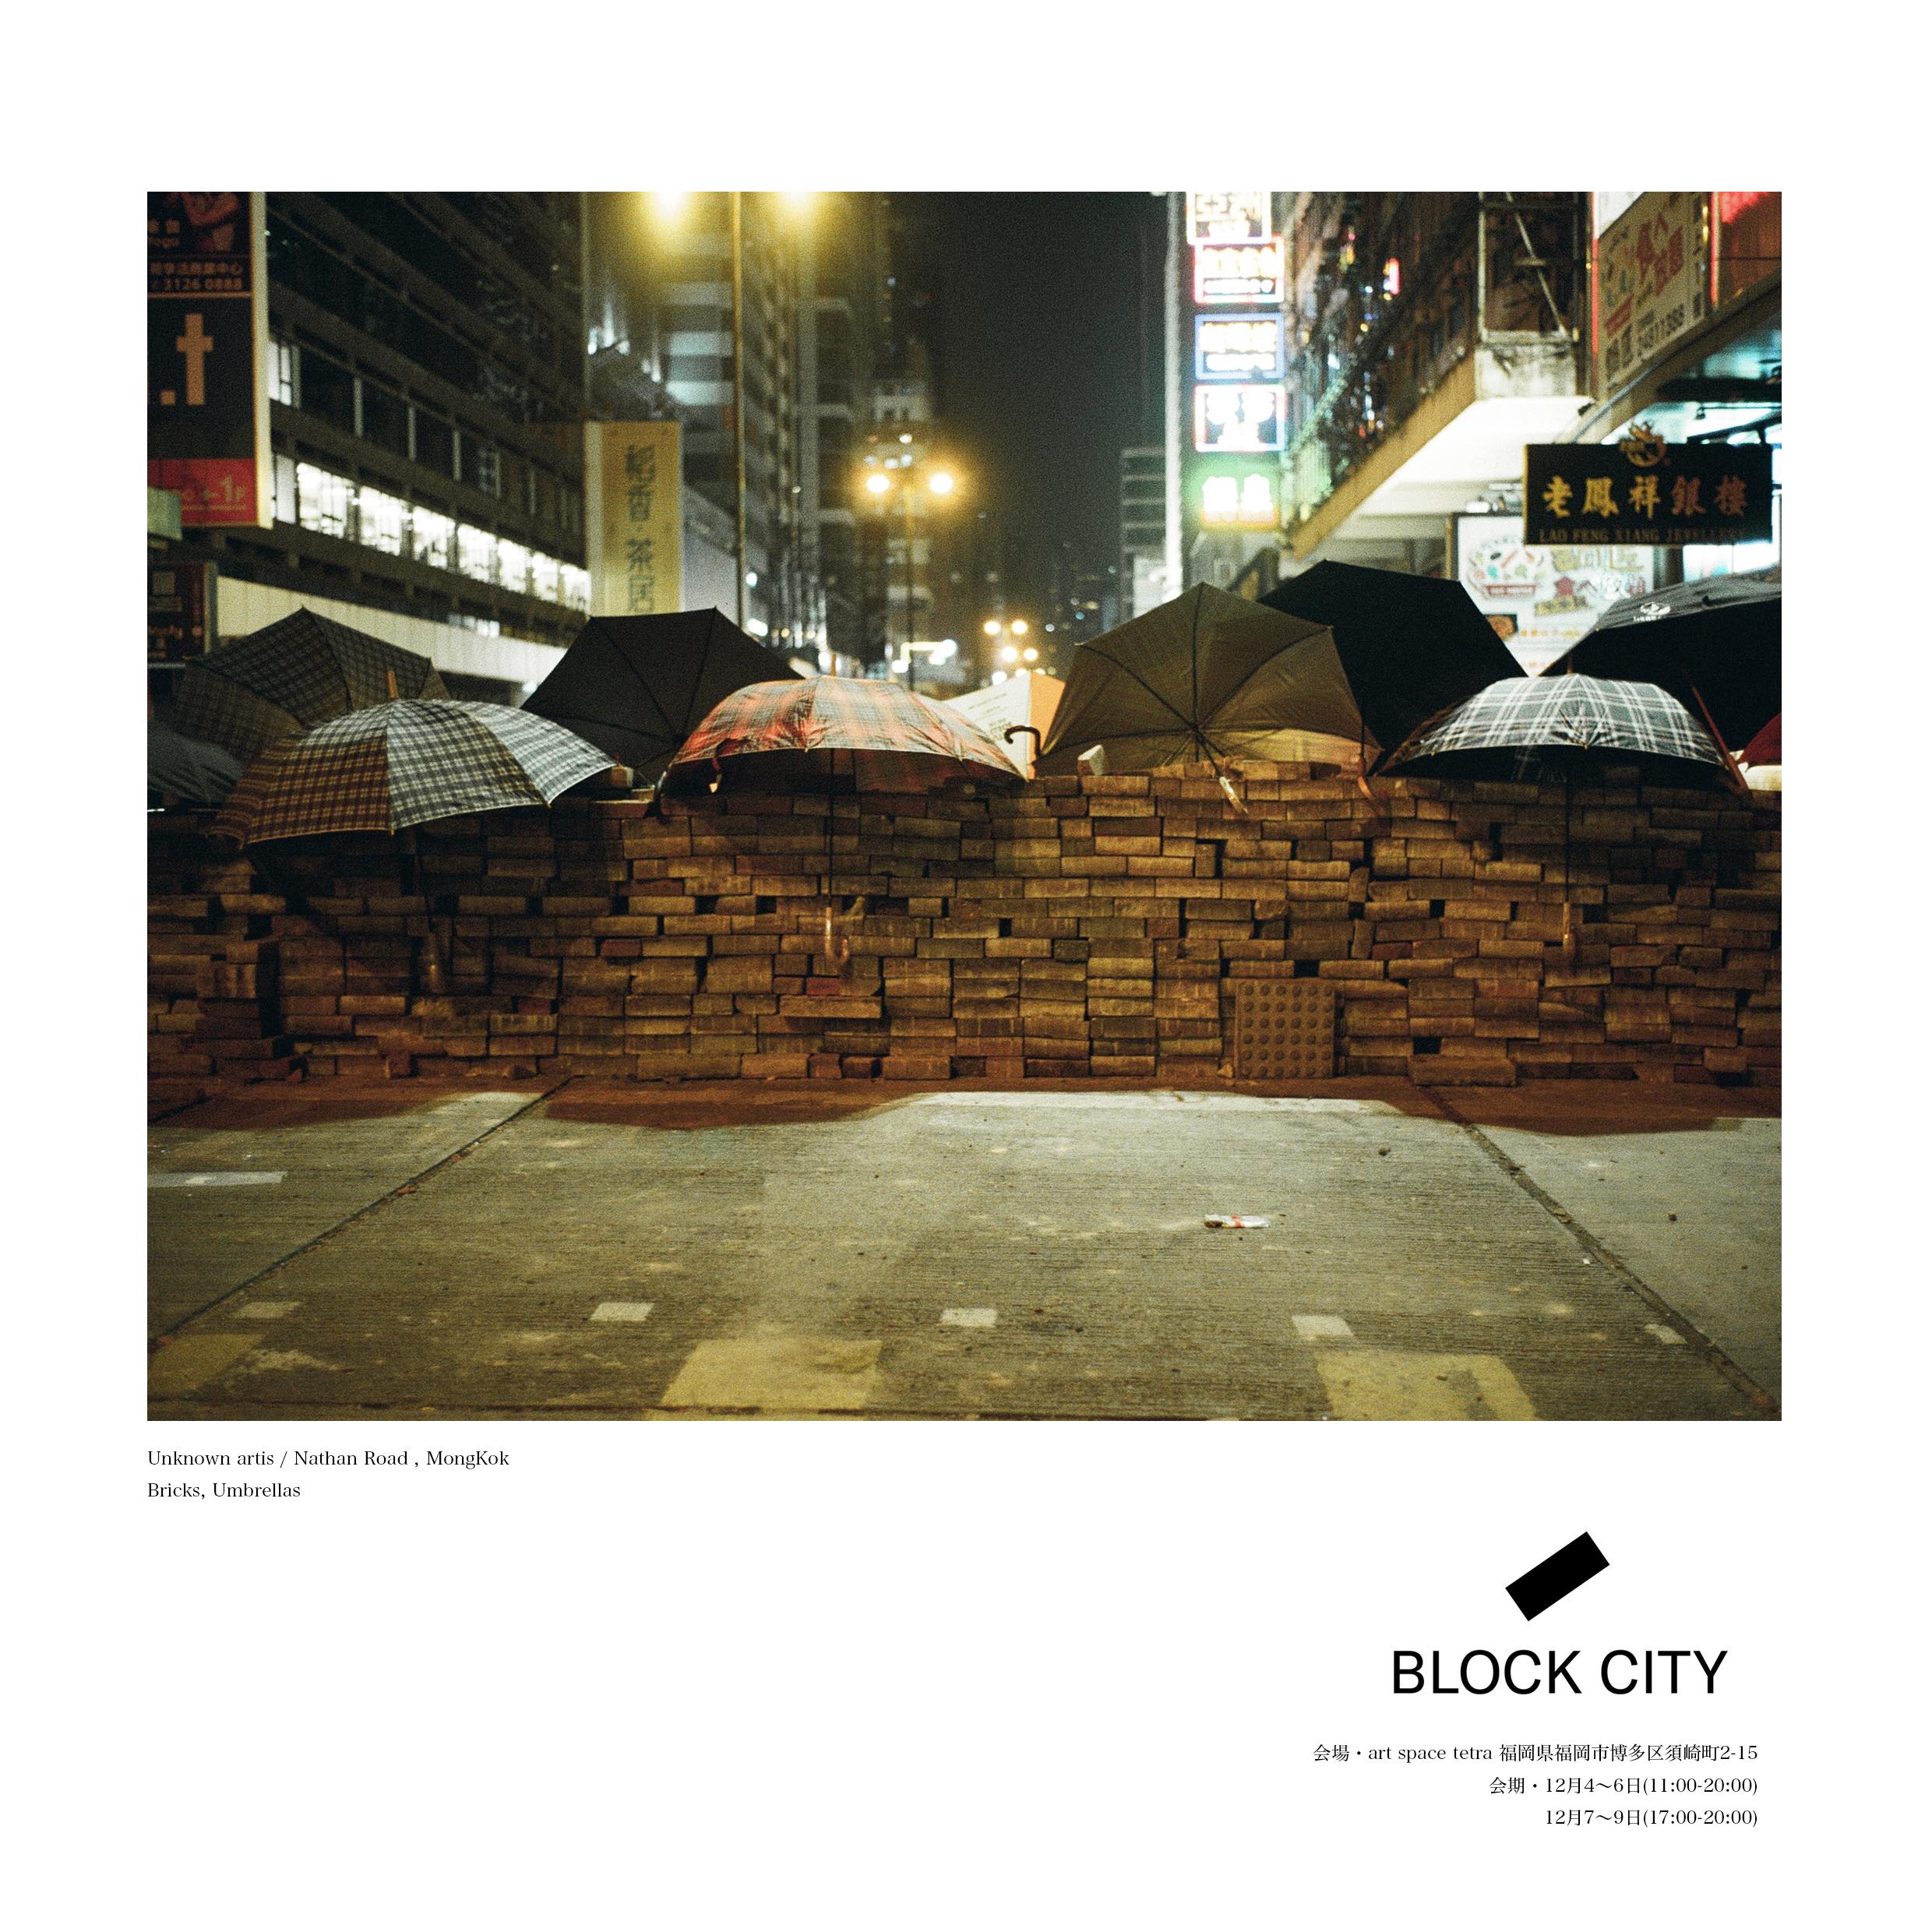 児玉浩宜写真展「BLOCK CITY」 